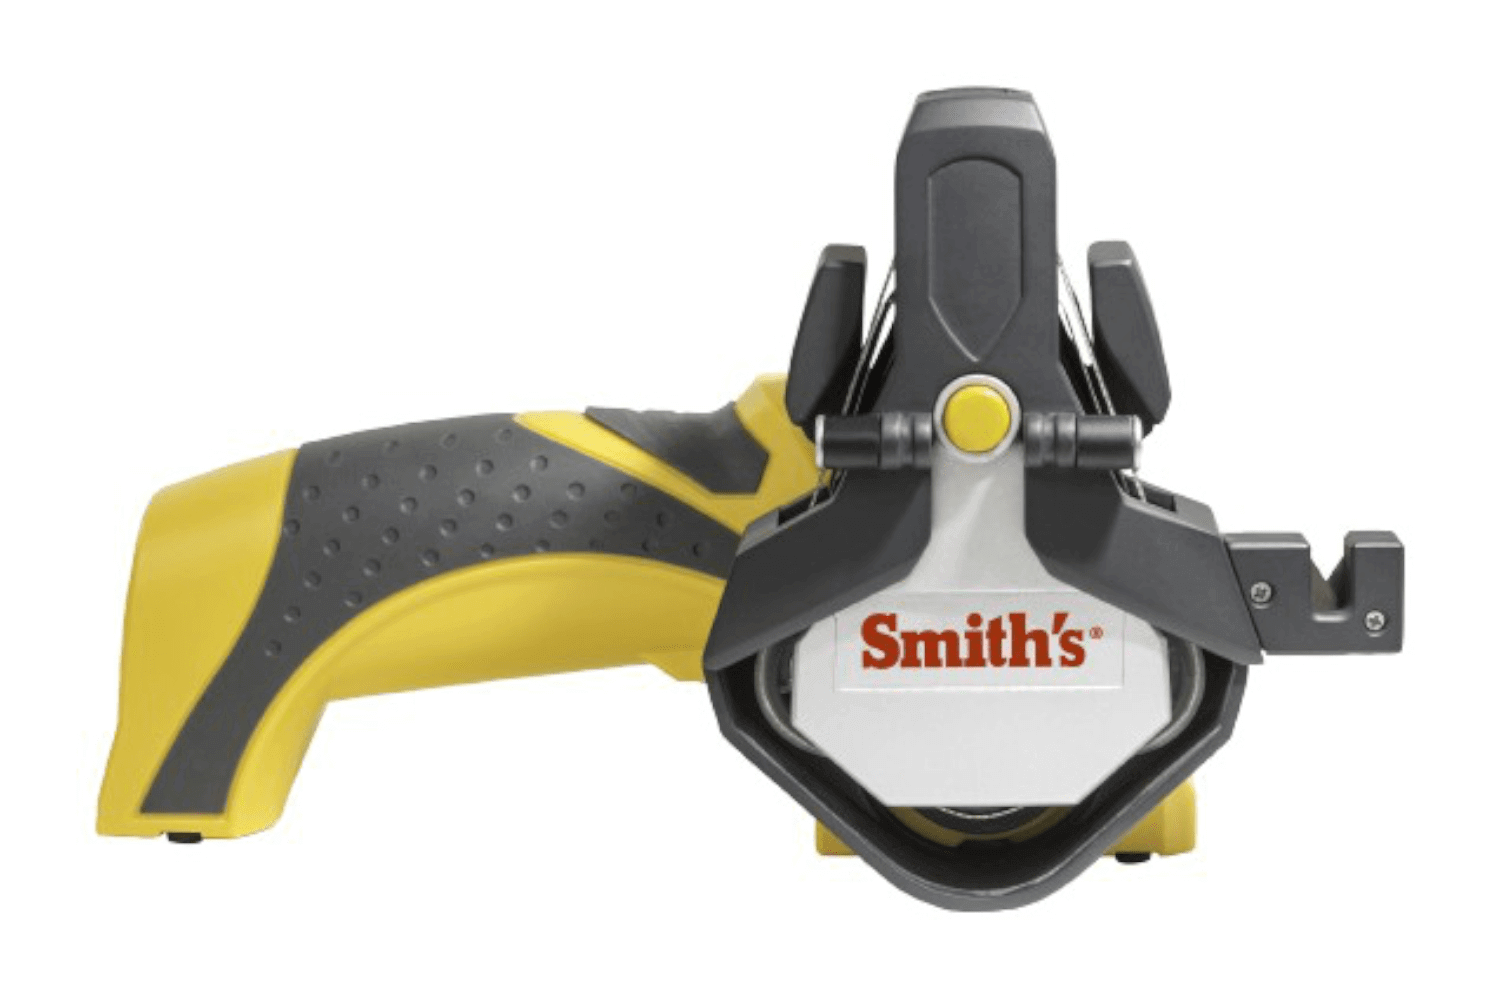 Affûteur électrique Smith's sans fil chargeur inclus